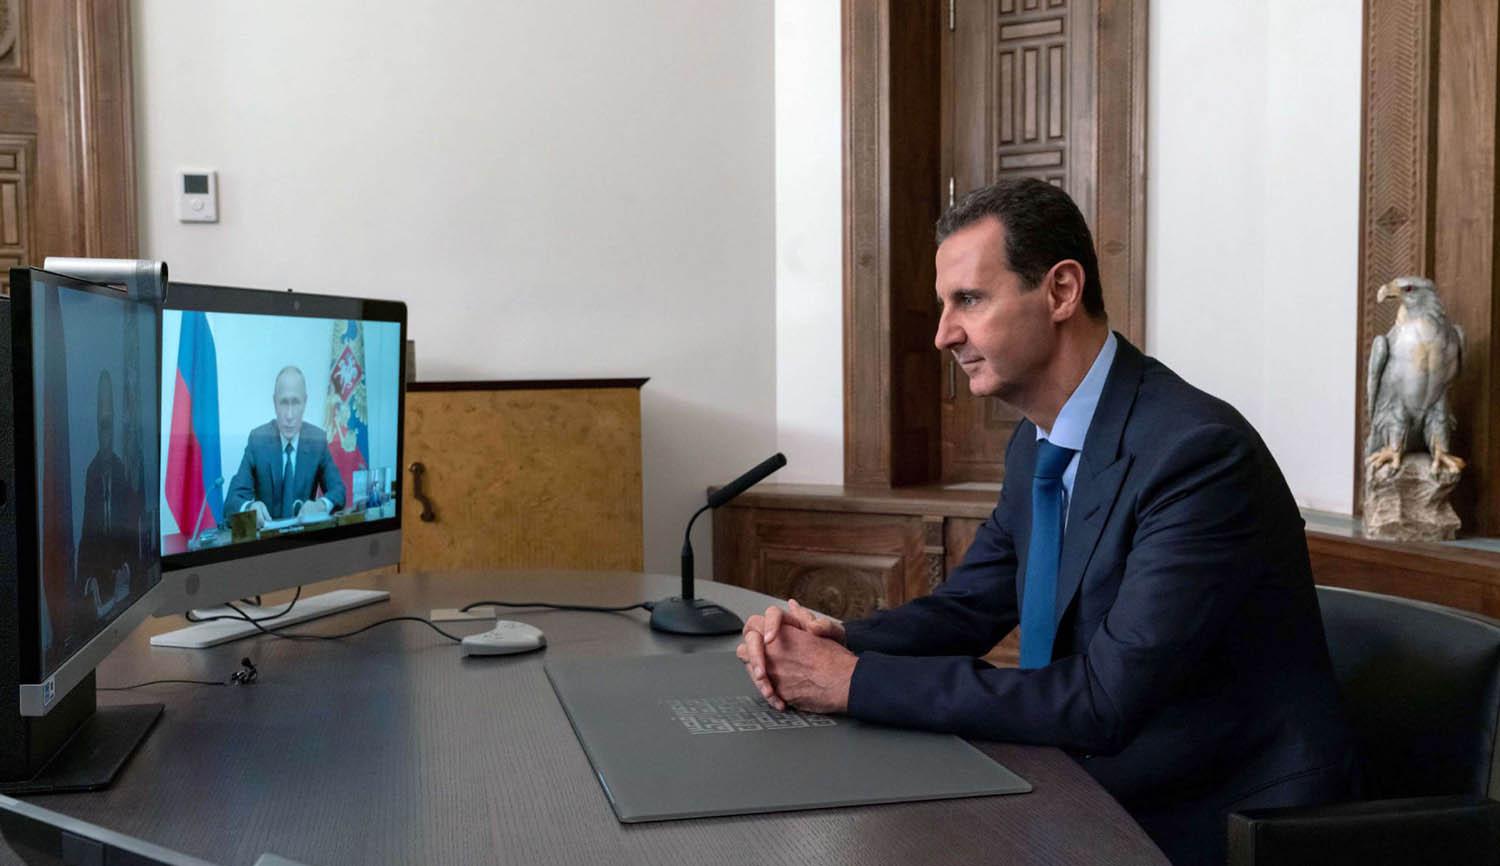 لقاء عبر الفيديو بين الرئيسين الروسي فلاديمير بوتين والسوري بشار الأسد